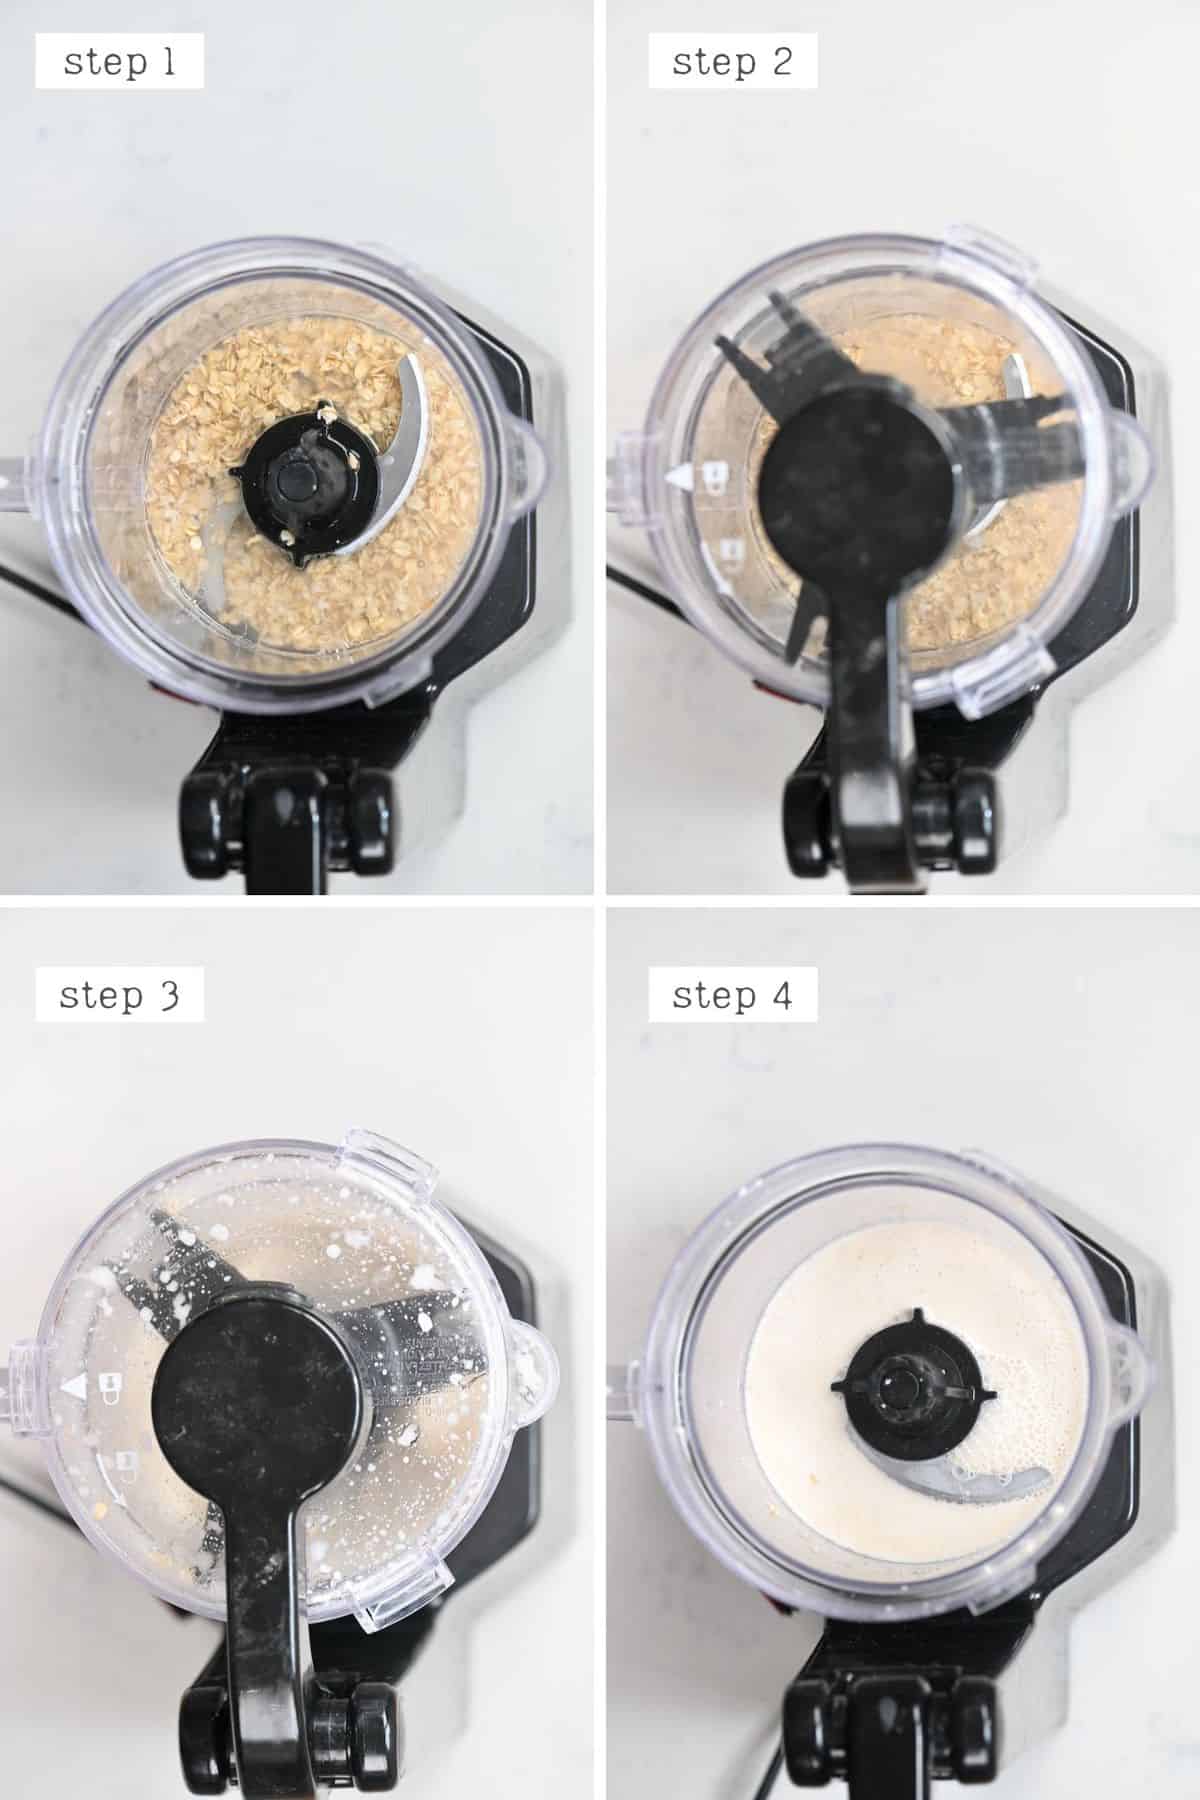 Steps for making oat creamer